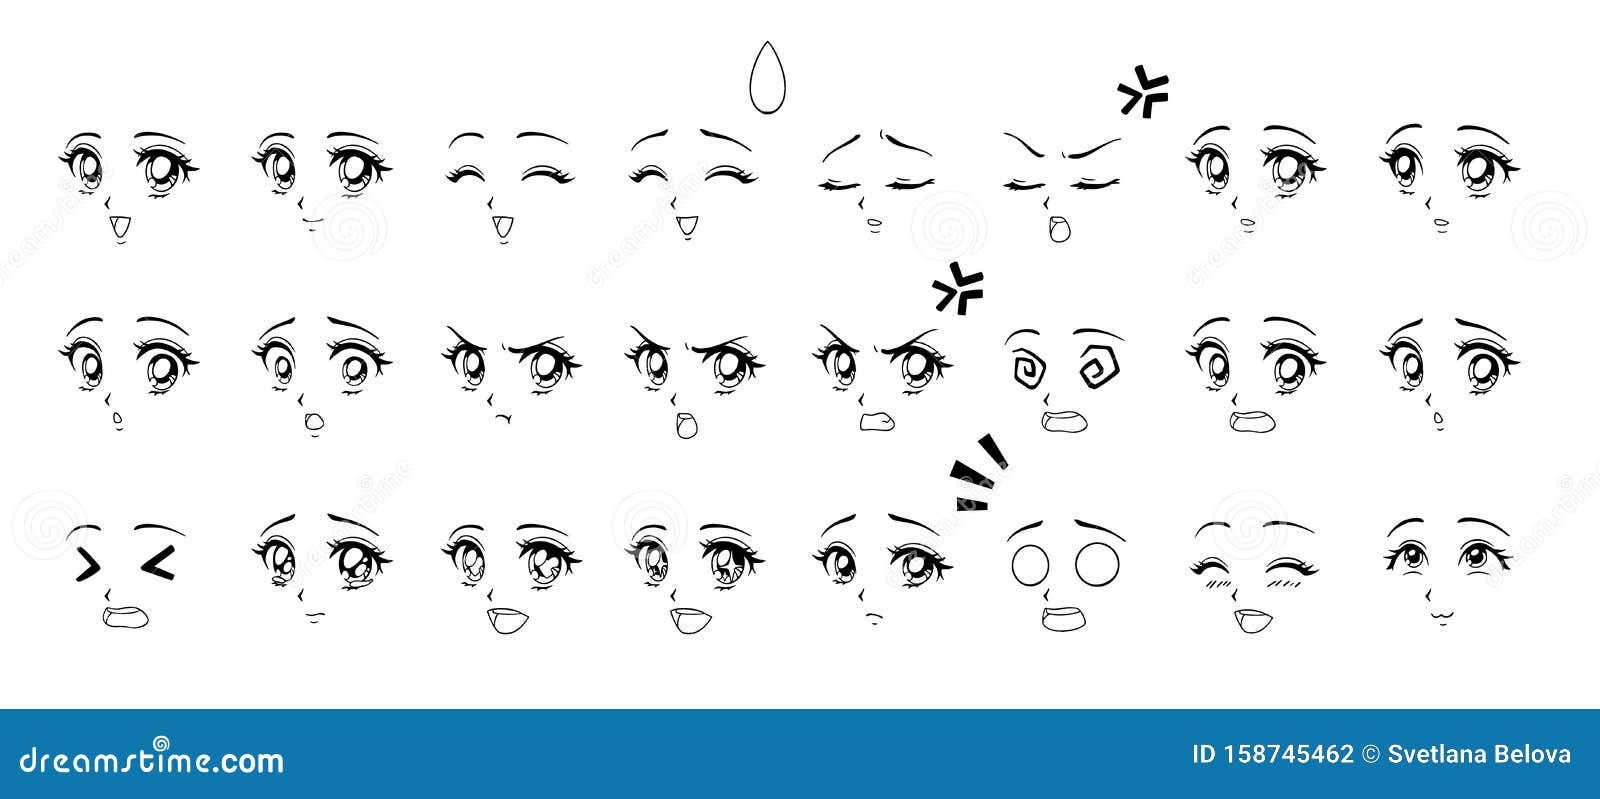 Conjunto de olhos e bocas kawaii com emoções diferentes